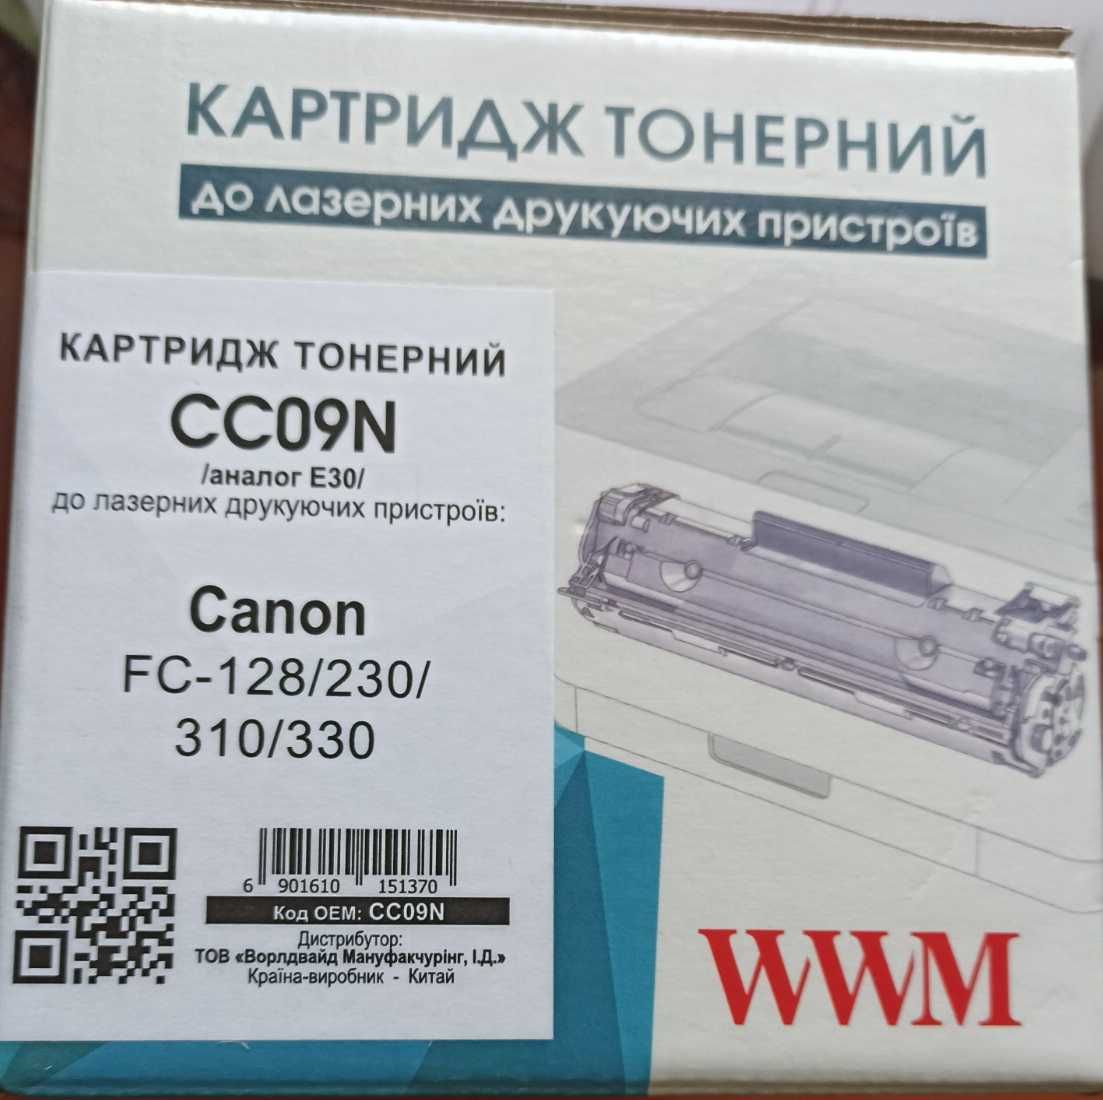 Картридж тонерний WWM для Canon FC-128/230/310/330 (CC09N) 4 000 копій